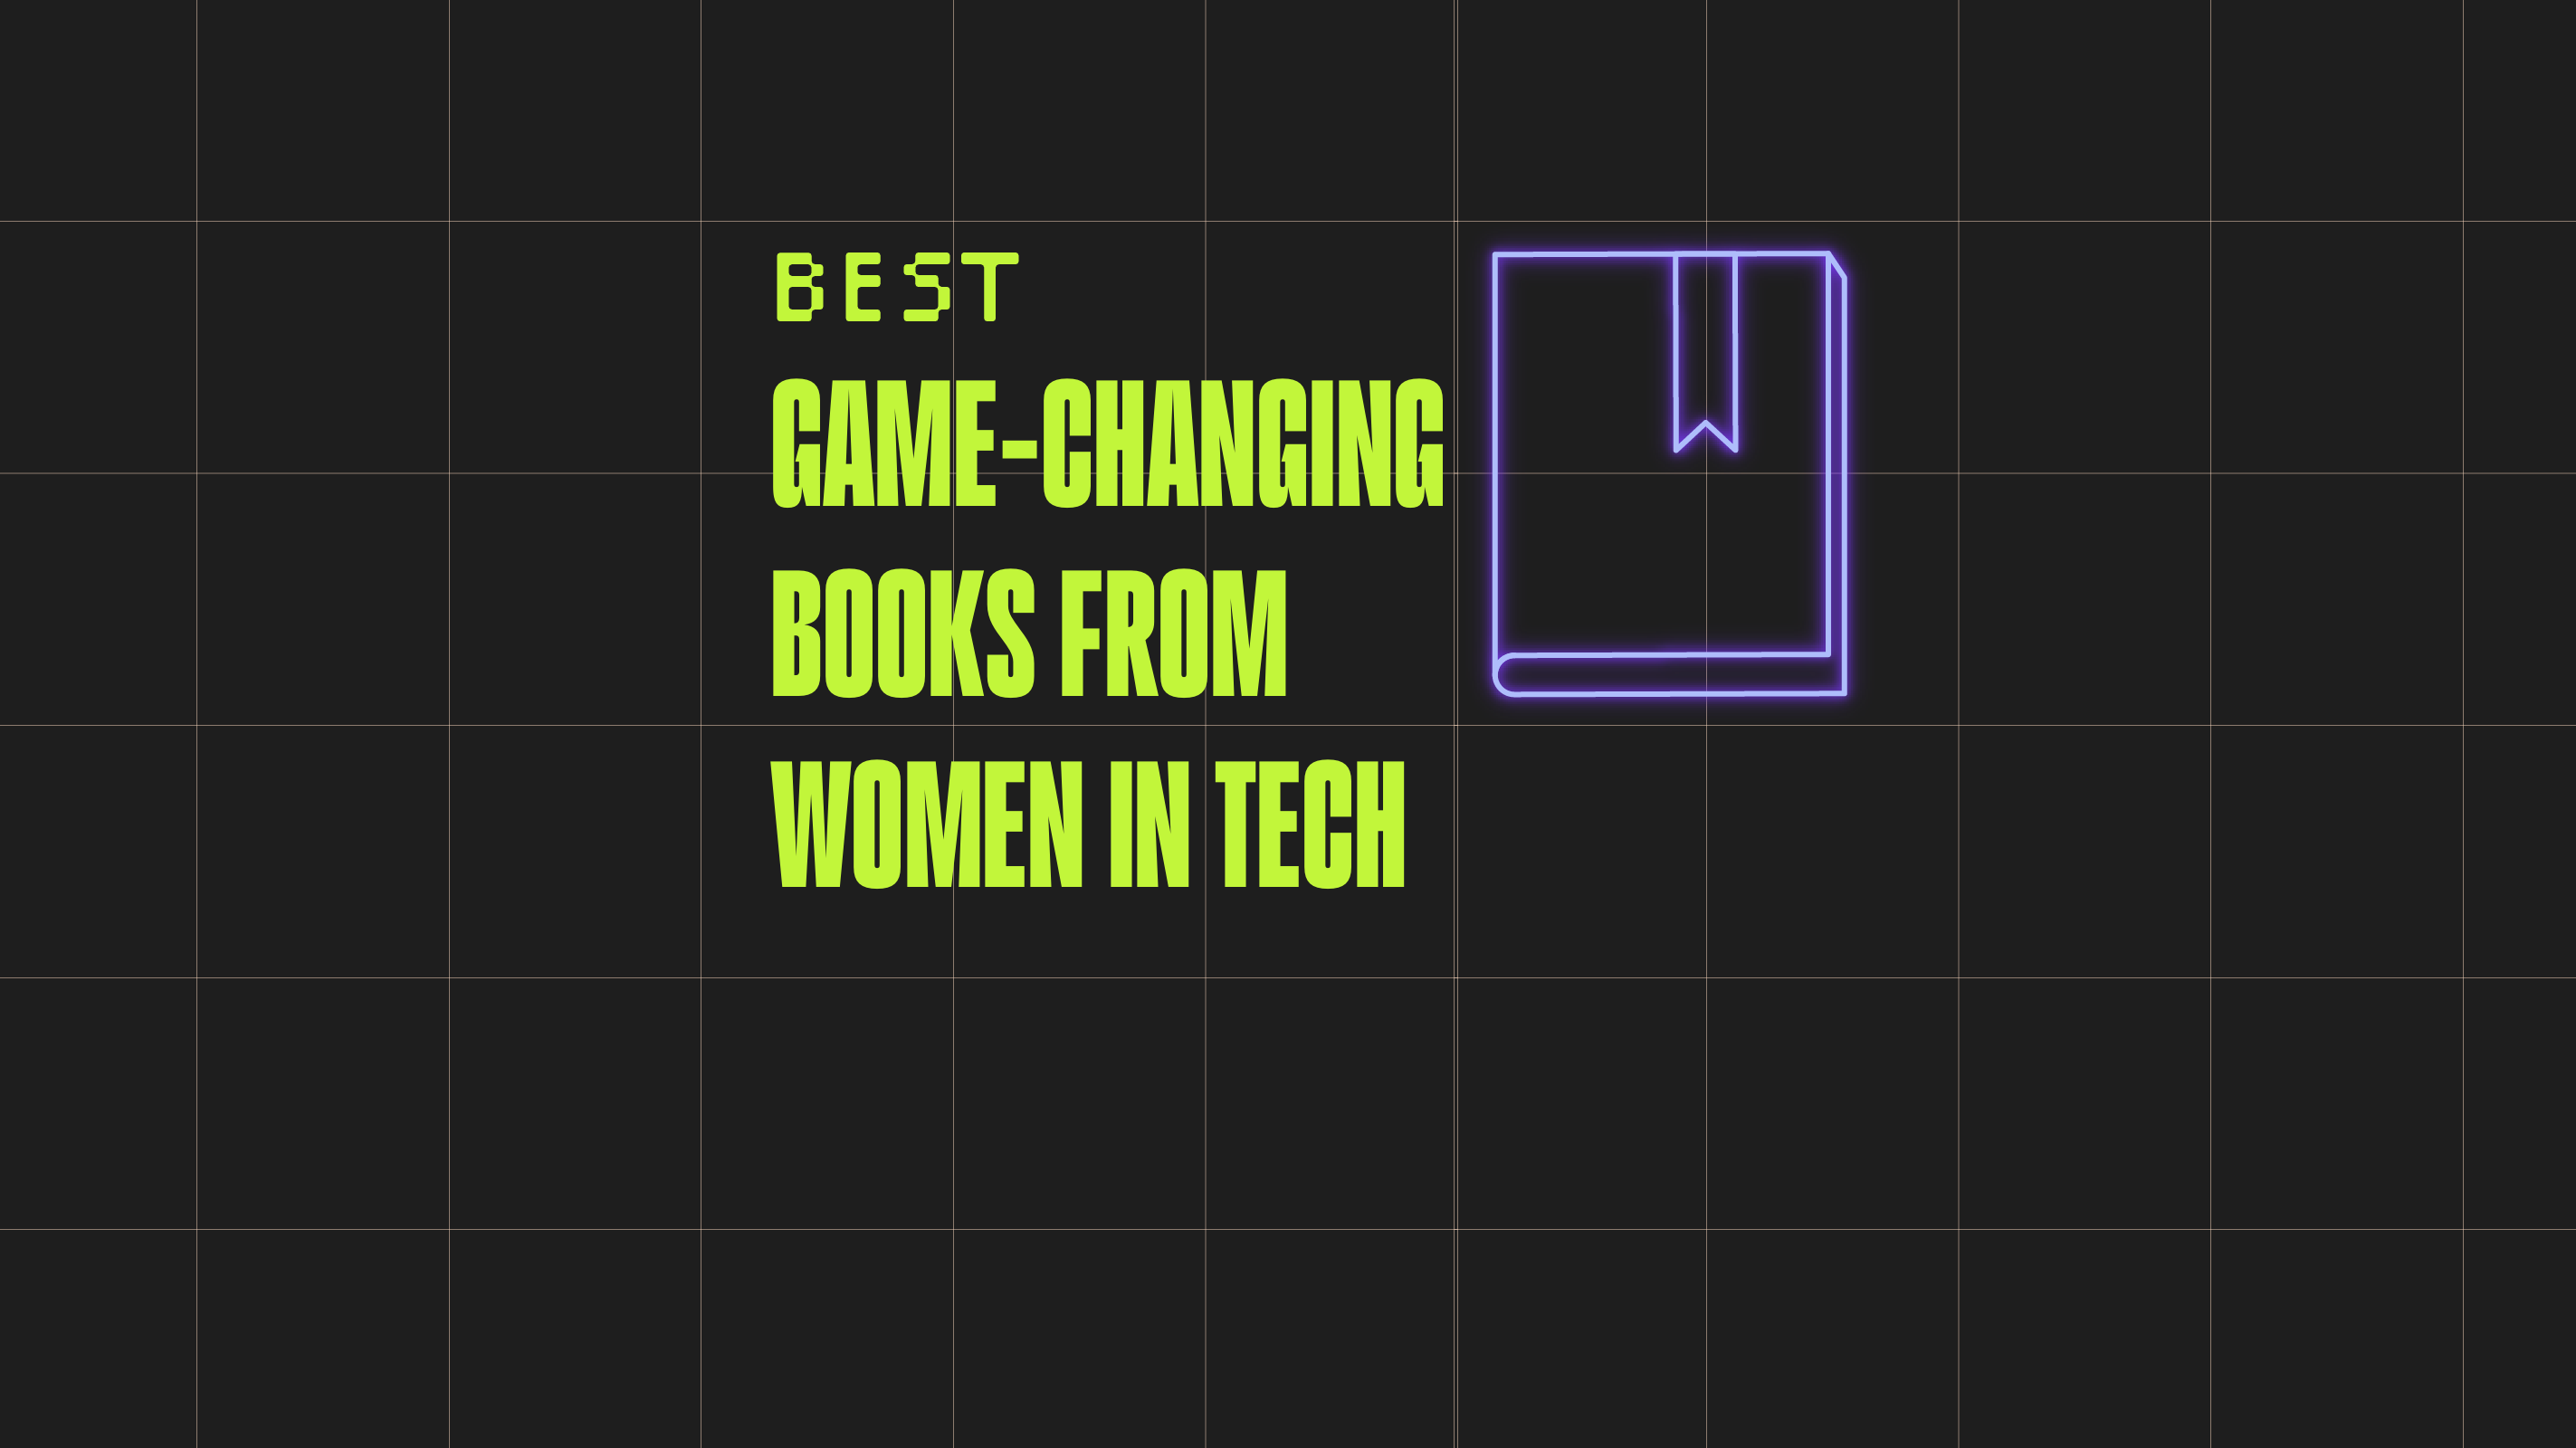 Must Read Books for Women in Tech - Stem Women